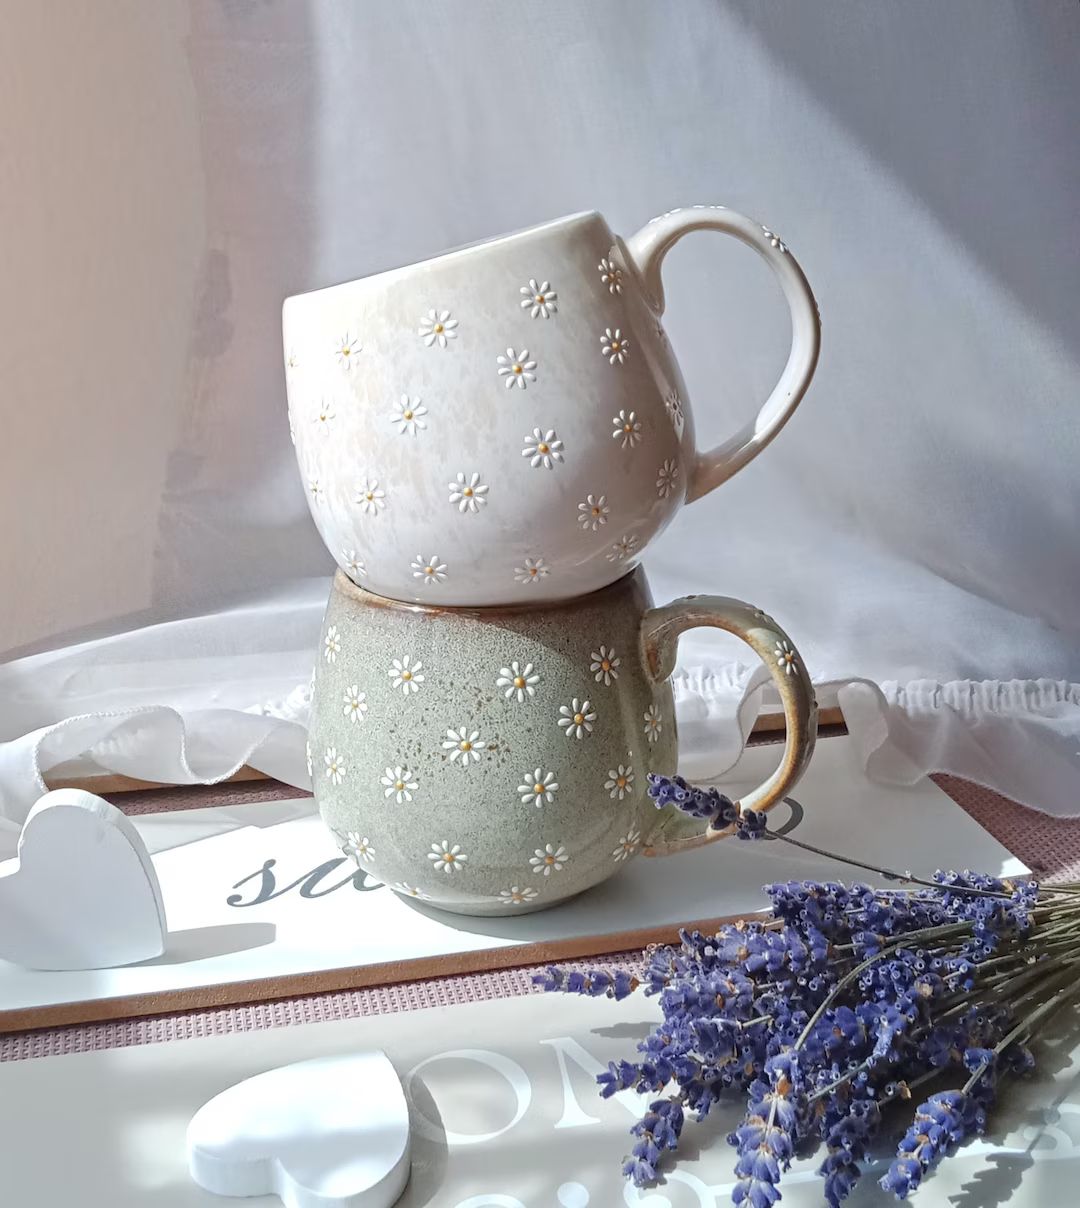 Daisy coffee mug | Cozy tea cups | Daisy cappuccino ceramic mug | Cute daisy pottery| Hand painte... | Etsy (US)